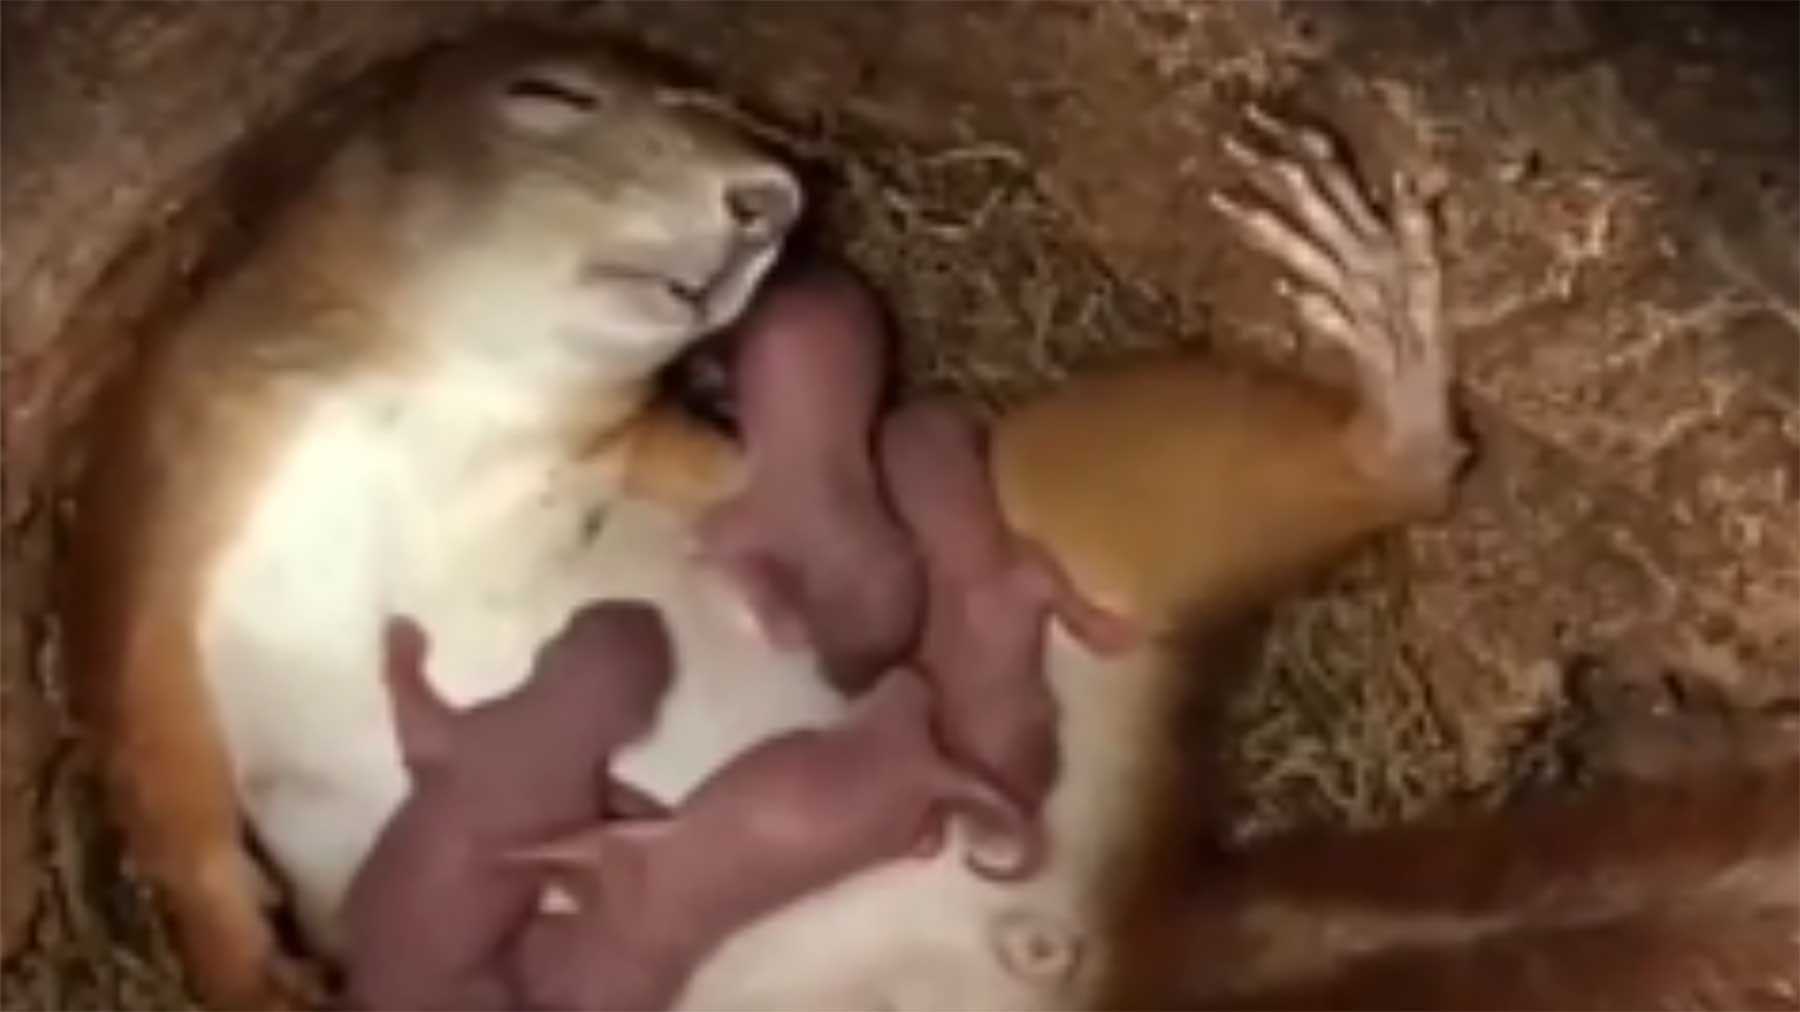 Aufnahmen aus dem Inneren eines Eichhörnchen-Nestes